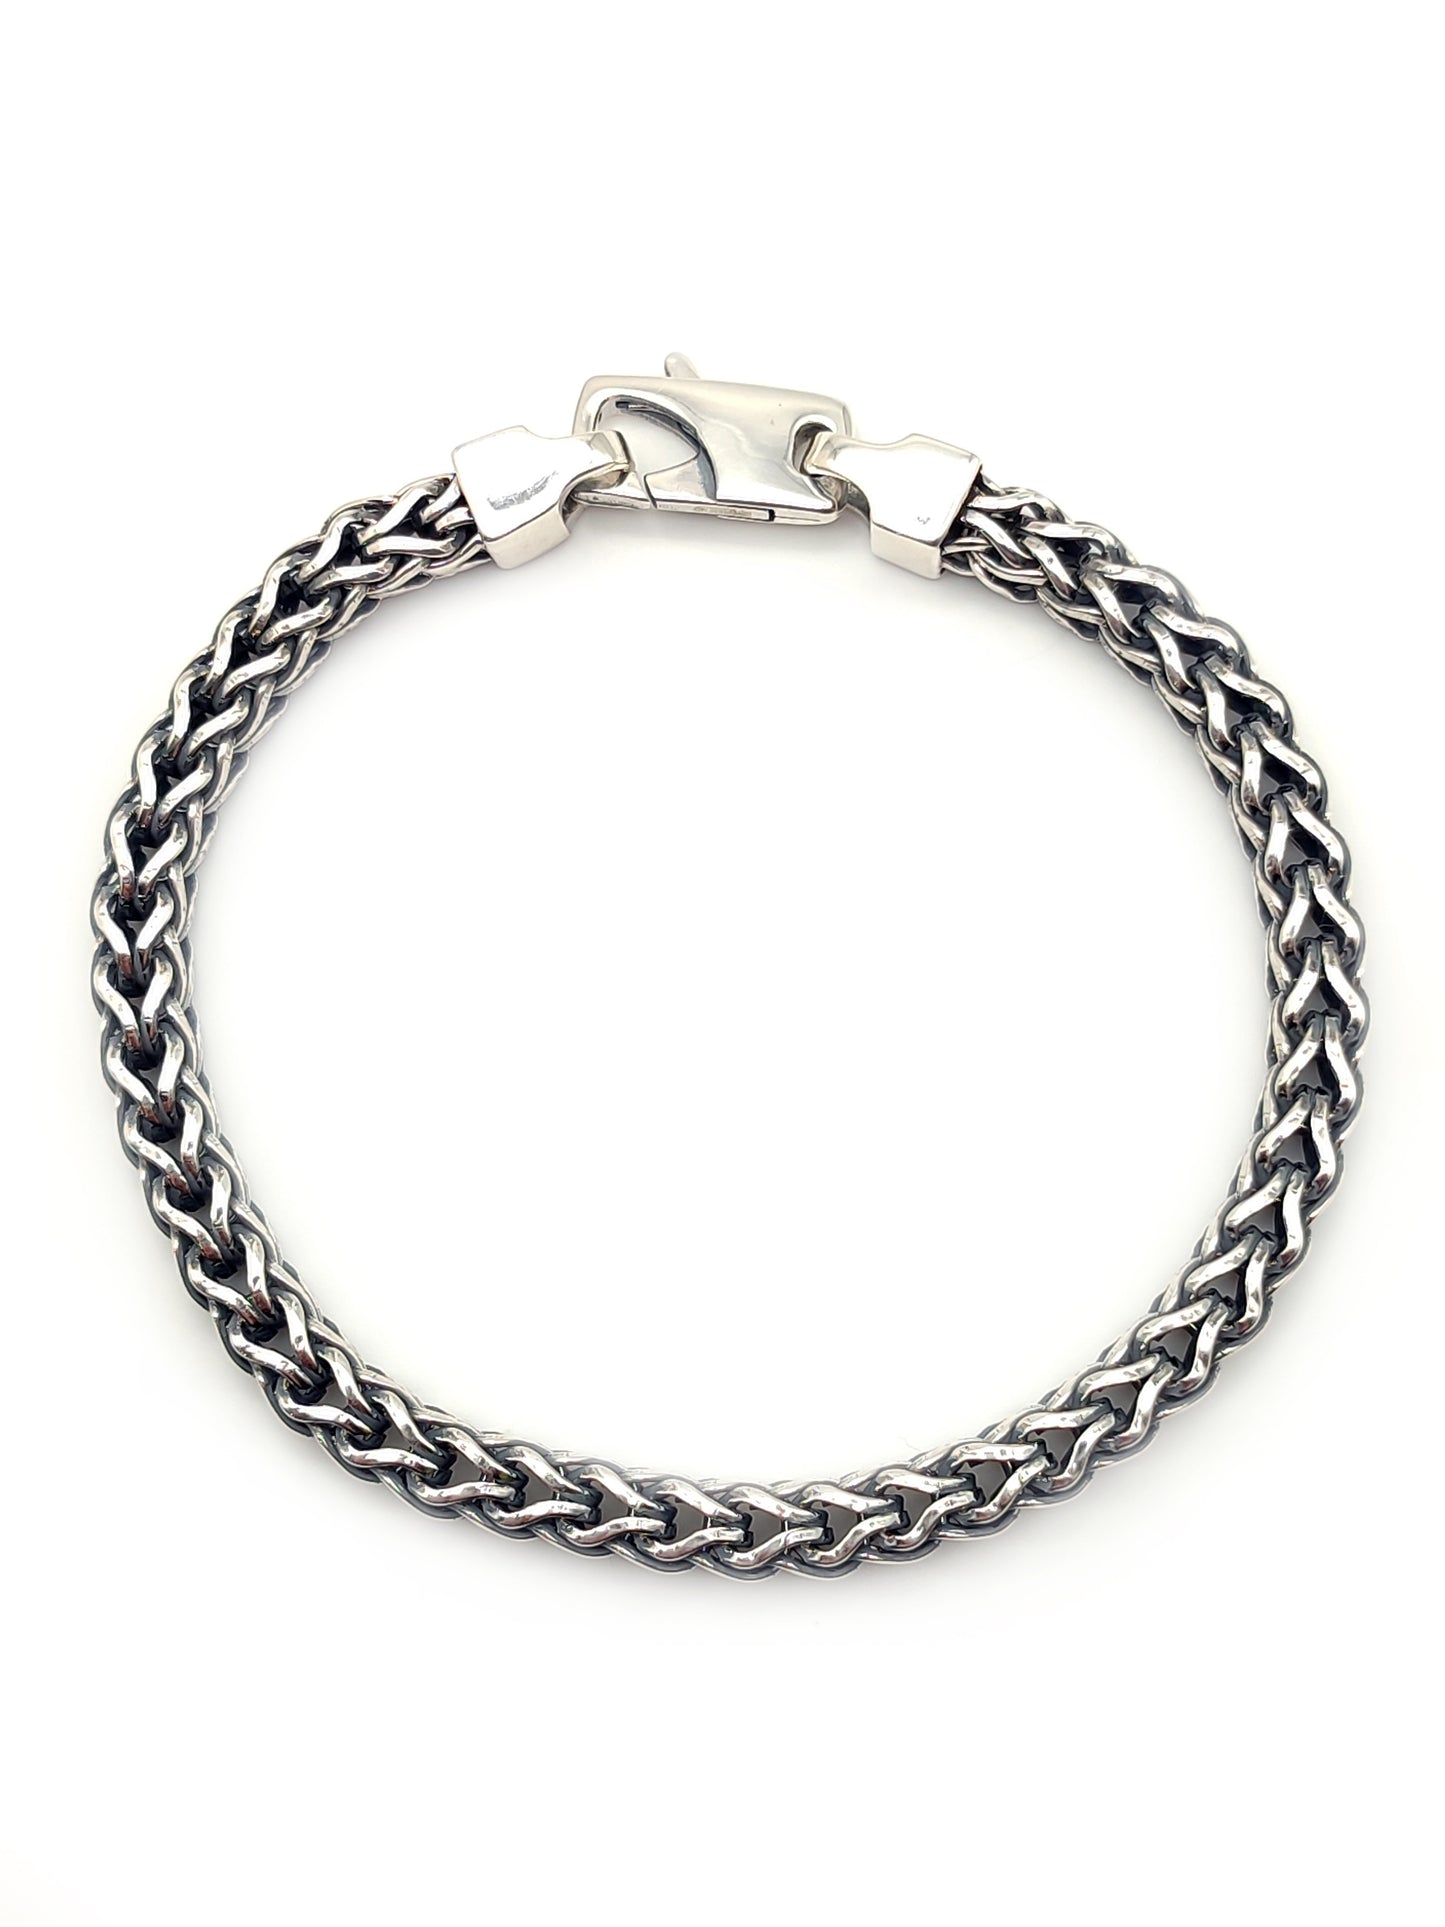 Spike chain bracelet